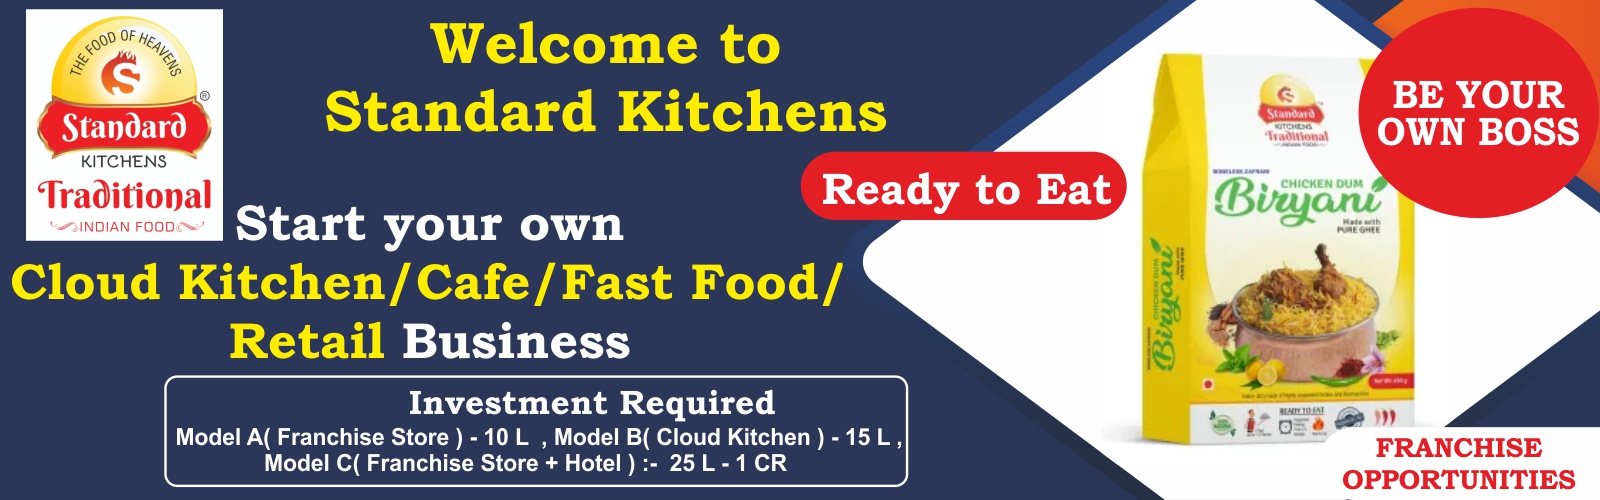 admin/uploads/brand_registration/STANDARD KITCHENS TRADITIONAL INDIAN FOOD